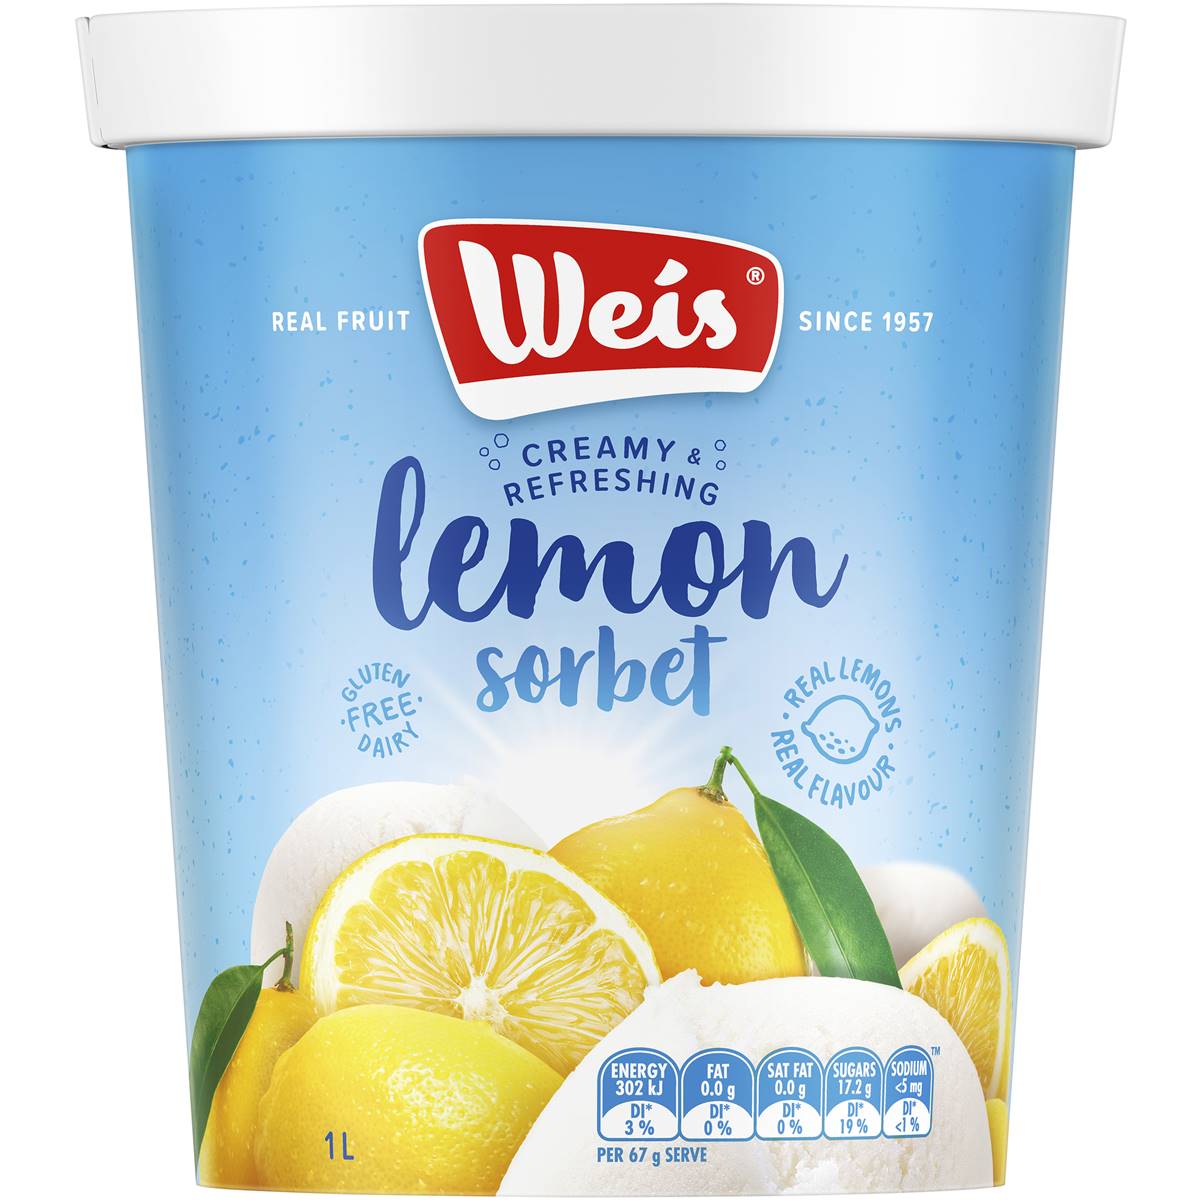 Calories in Weis Sorbet Lemon